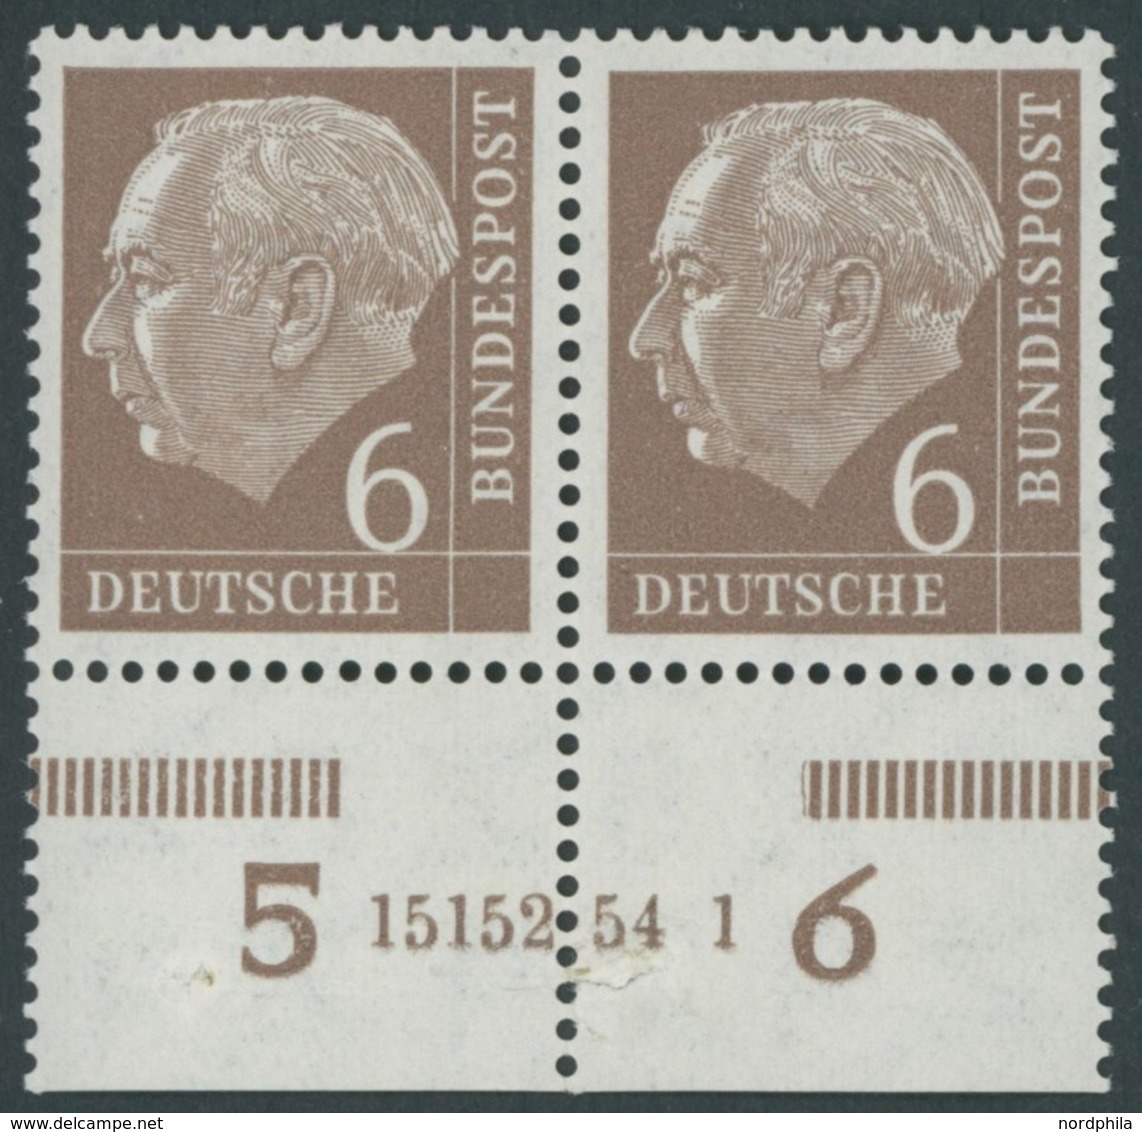 BUNDESREPUBLIK 180xHAN **, 1954, 6 Pf. Heuss, Unterrandpaar Mit HAN 15152.54 1, (Klammerspur), Marken Postfrisch, Pracht - Usati